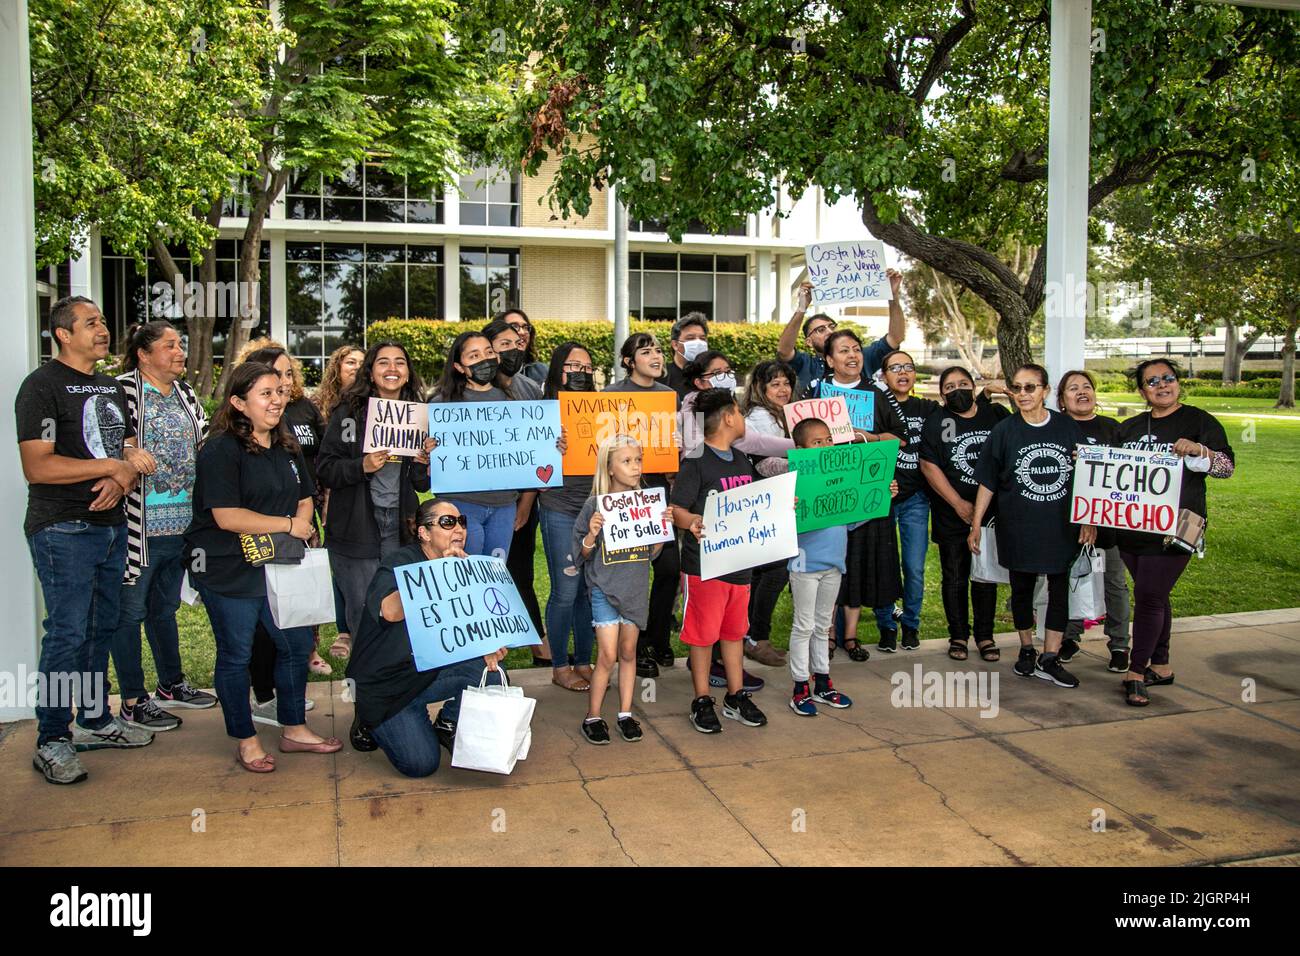 Un gruppo di manifestanti per lo più ispanici porta segnali che richiedono il controllo del canone di affitto per una riunione del consiglio comunale a Costa Mesa, CA. Foto Stock